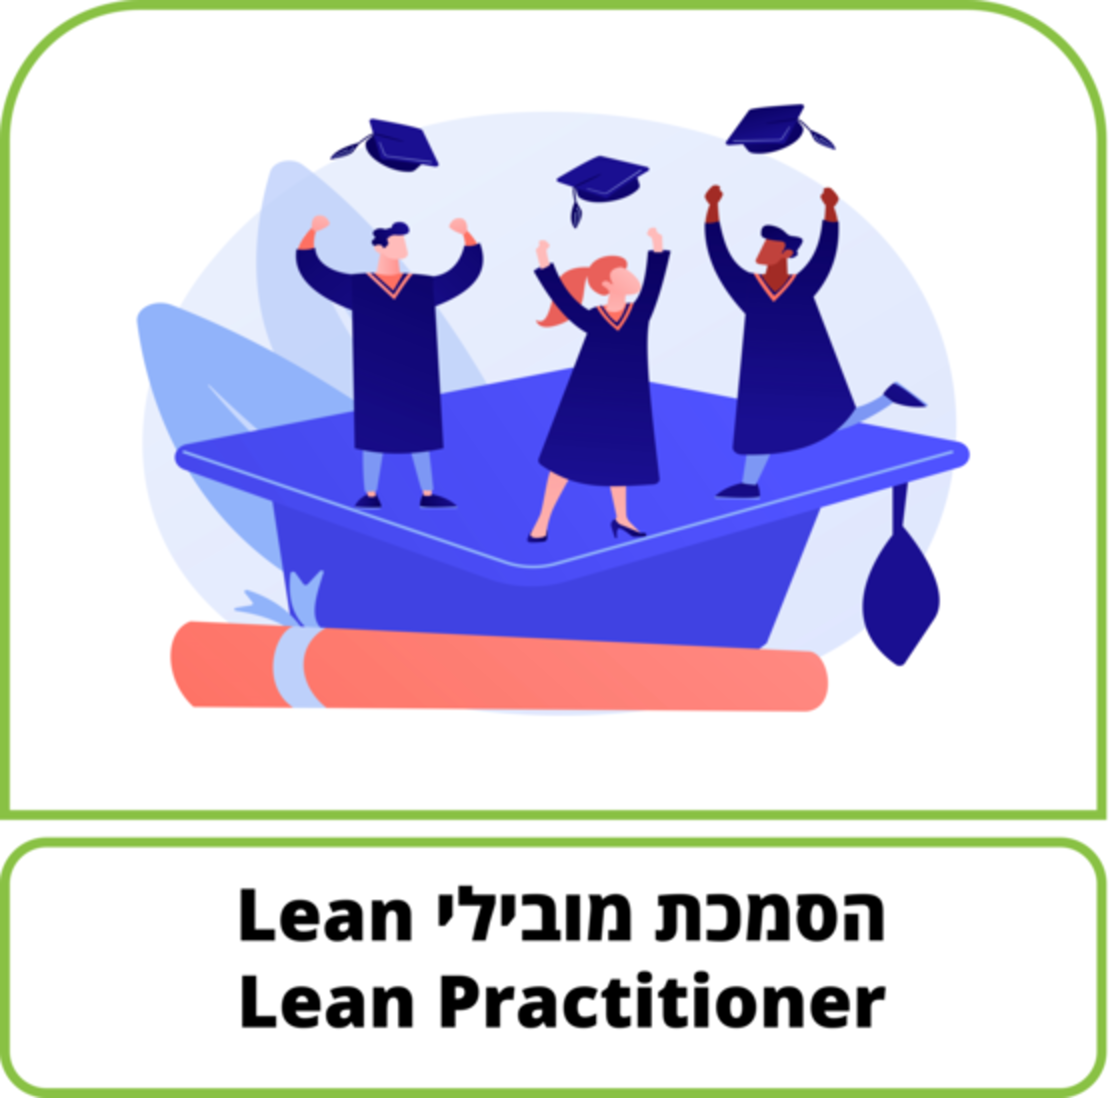 קורס דיגיטלי - הסמכת מובילי מצוינות - Lean Practitioner